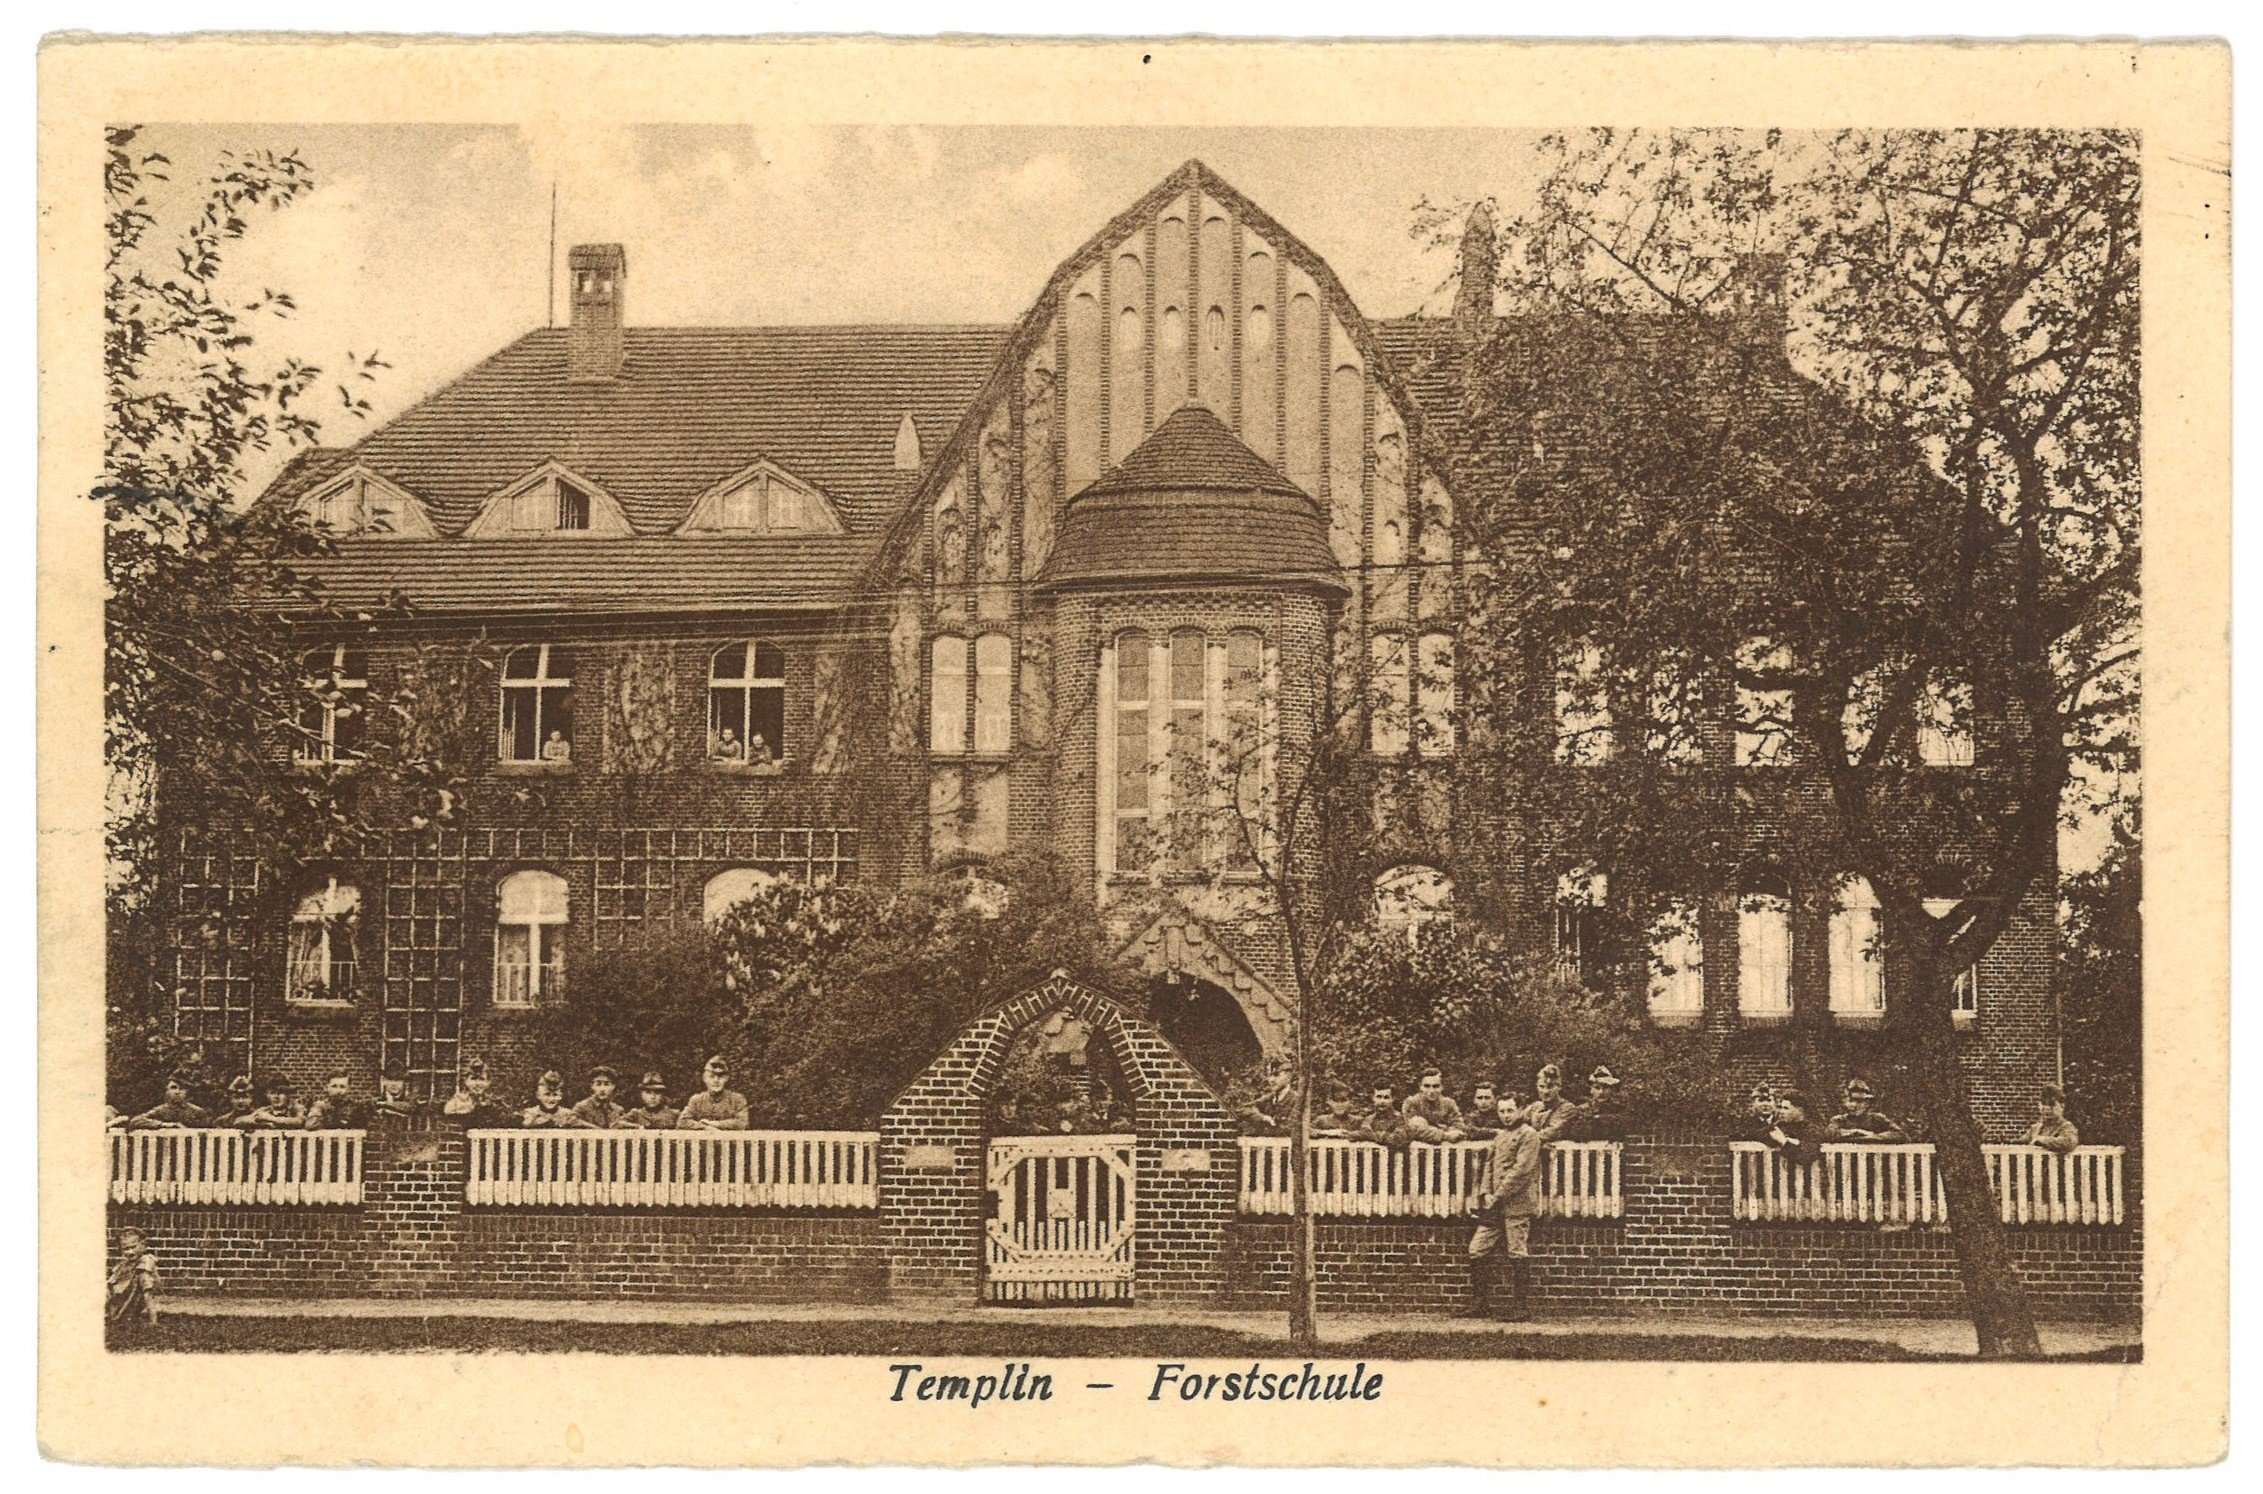 Templin: Forstschule (Landesgeschichtliche Vereinigung für die Mark Brandenburg e.V. CC BY)